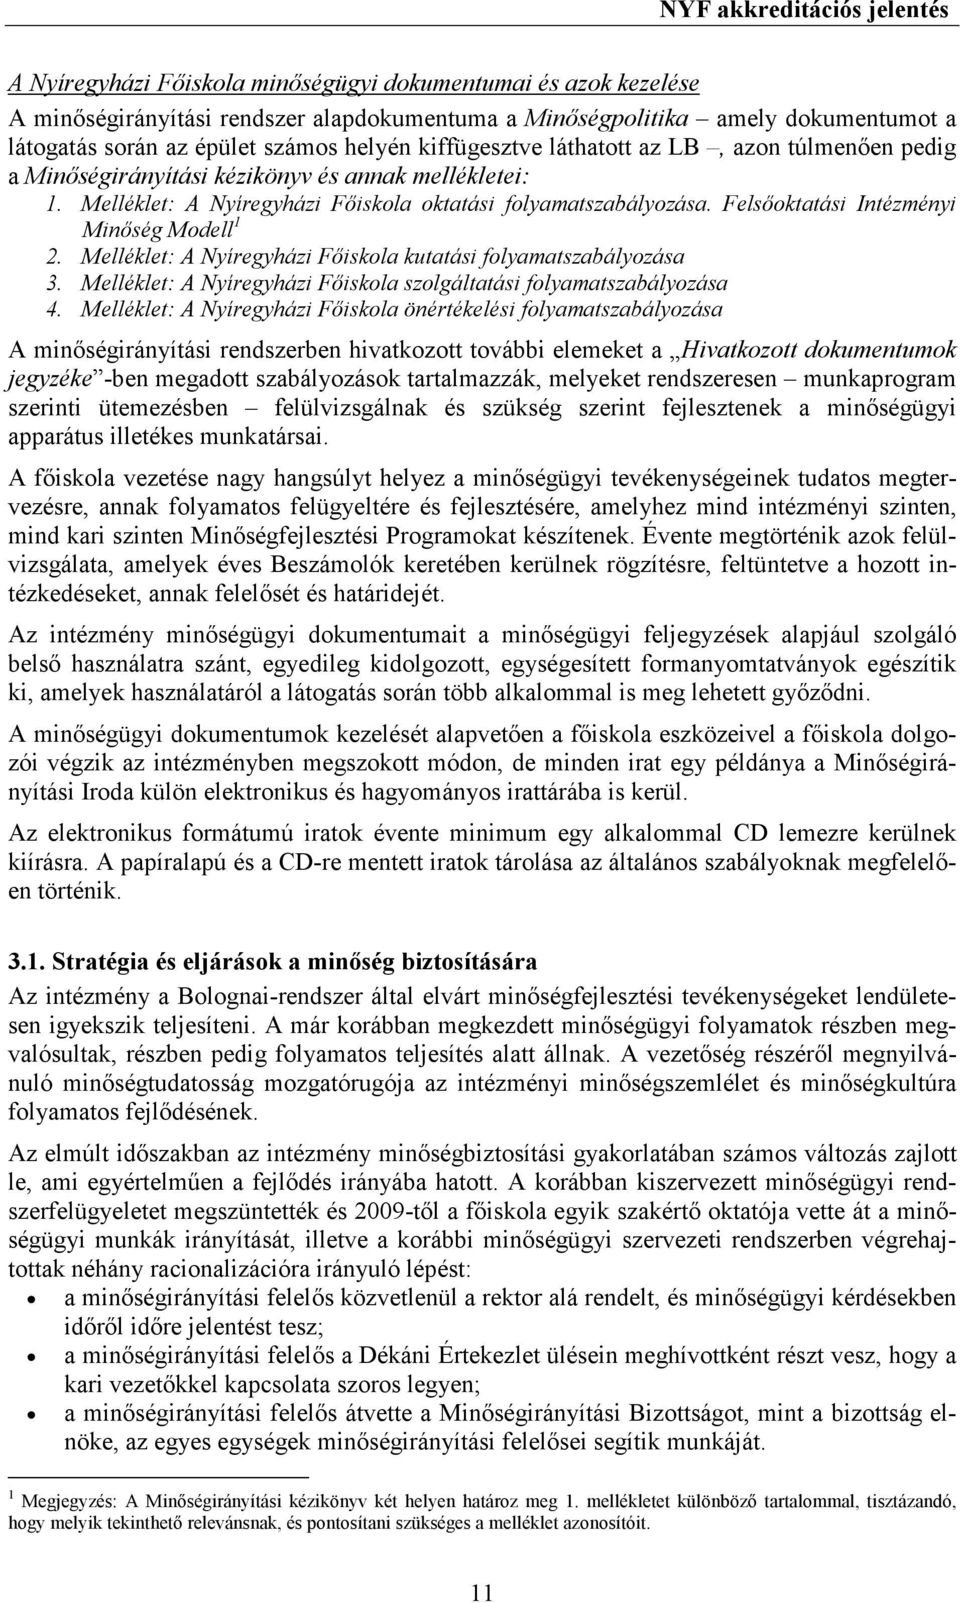 Felsıoktatási Intézményi Minıség Modell 1 2. Melléklet: A Nyíregyházi Fıiskola kutatási folyamatszabályozása 3. Melléklet: A Nyíregyházi Fıiskola szolgáltatási folyamatszabályozása 4.